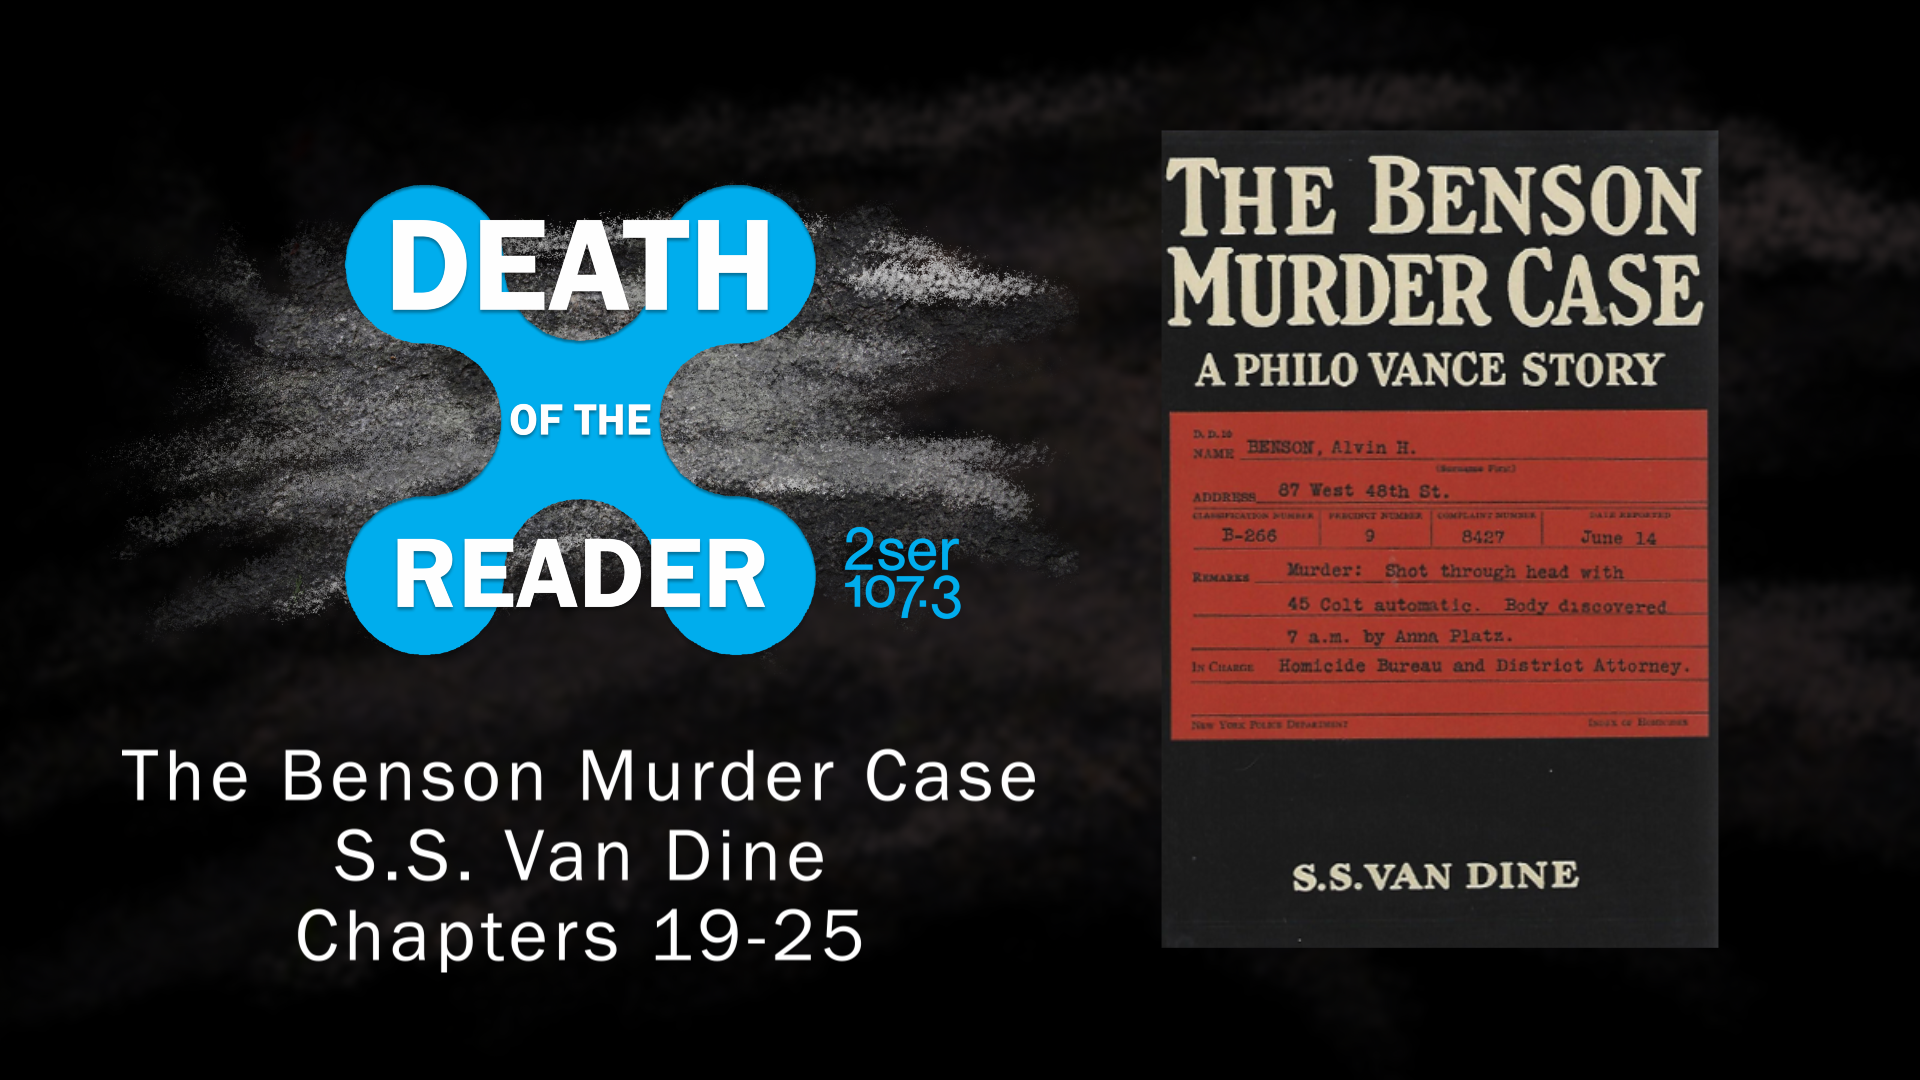 Murderer перевод. Philo Vance the Benson Murder Case. Одежда Murder was the Case.